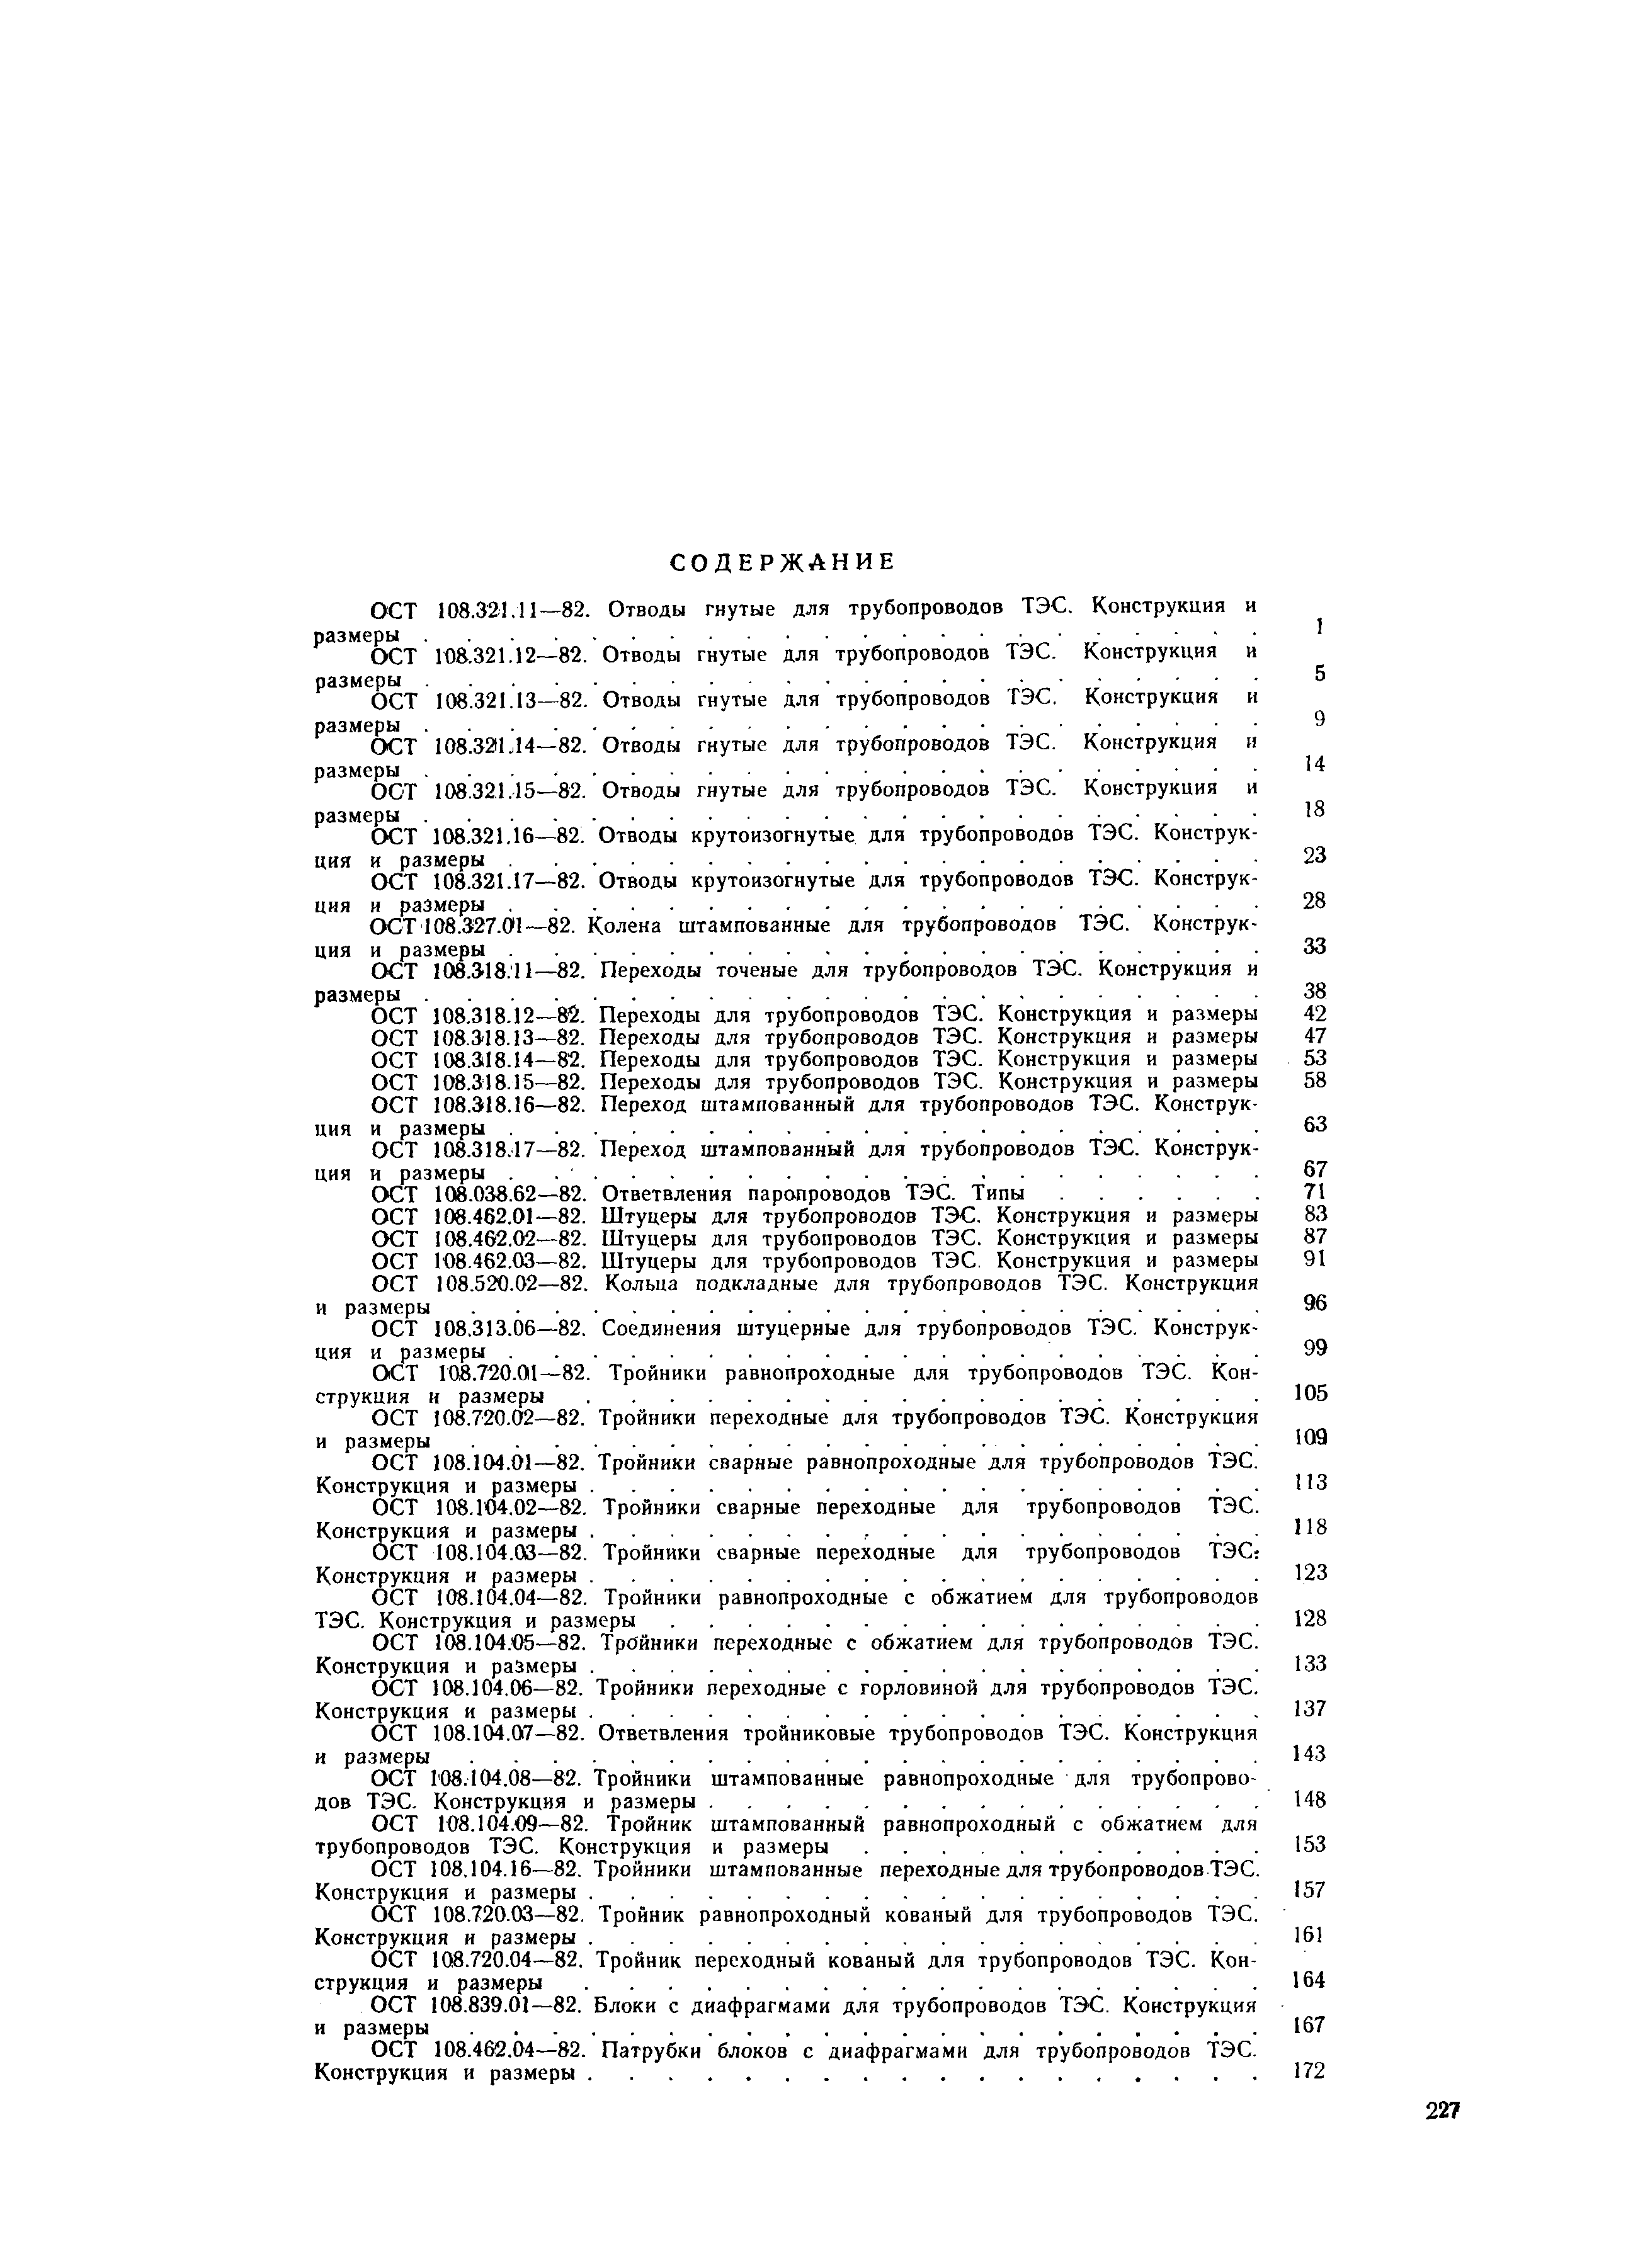 ОСТ 108.104.01-82